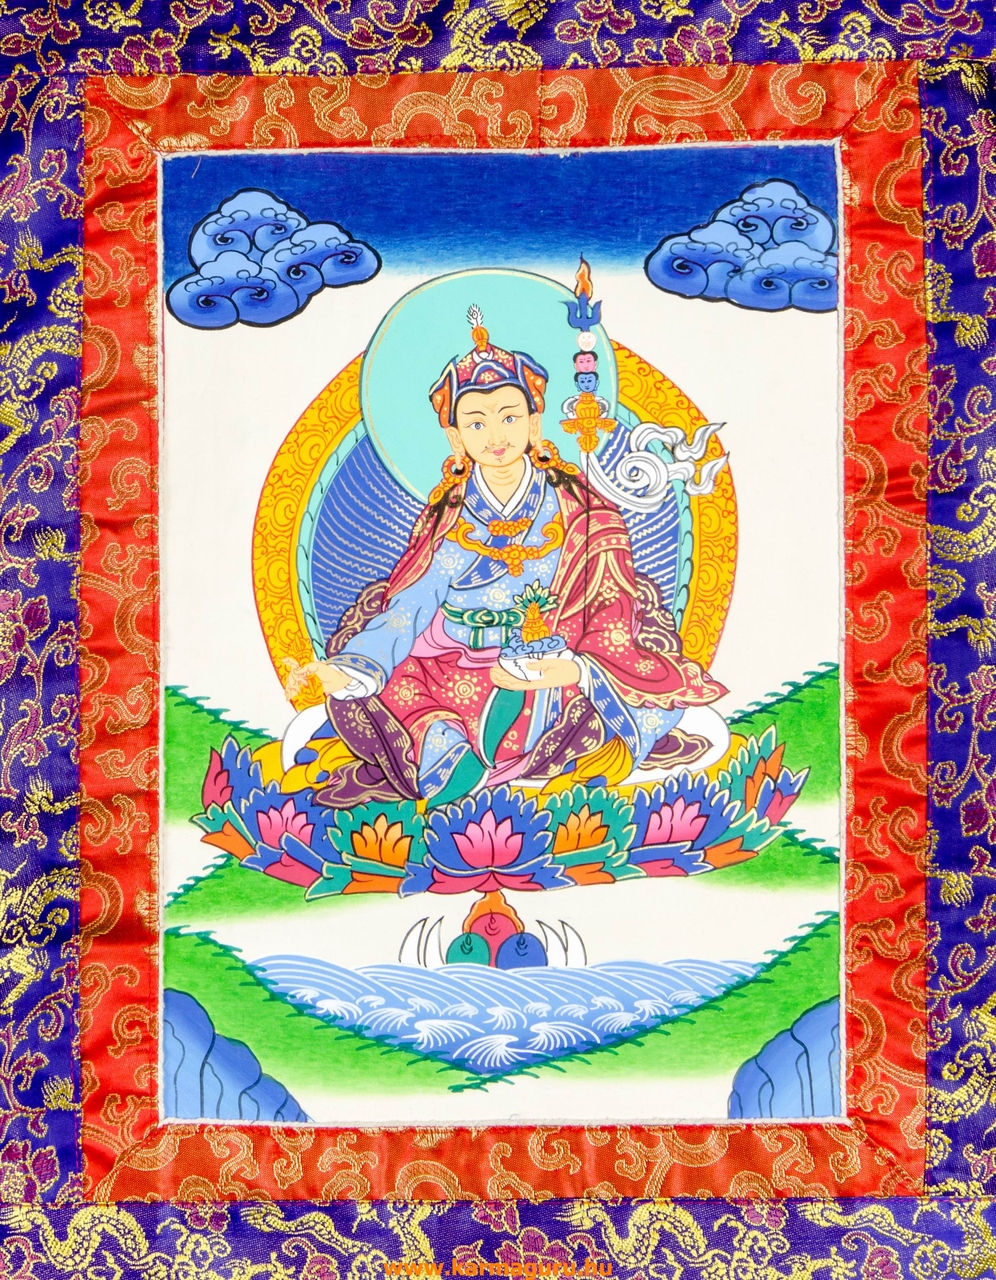 Guru Rinpoche thanka